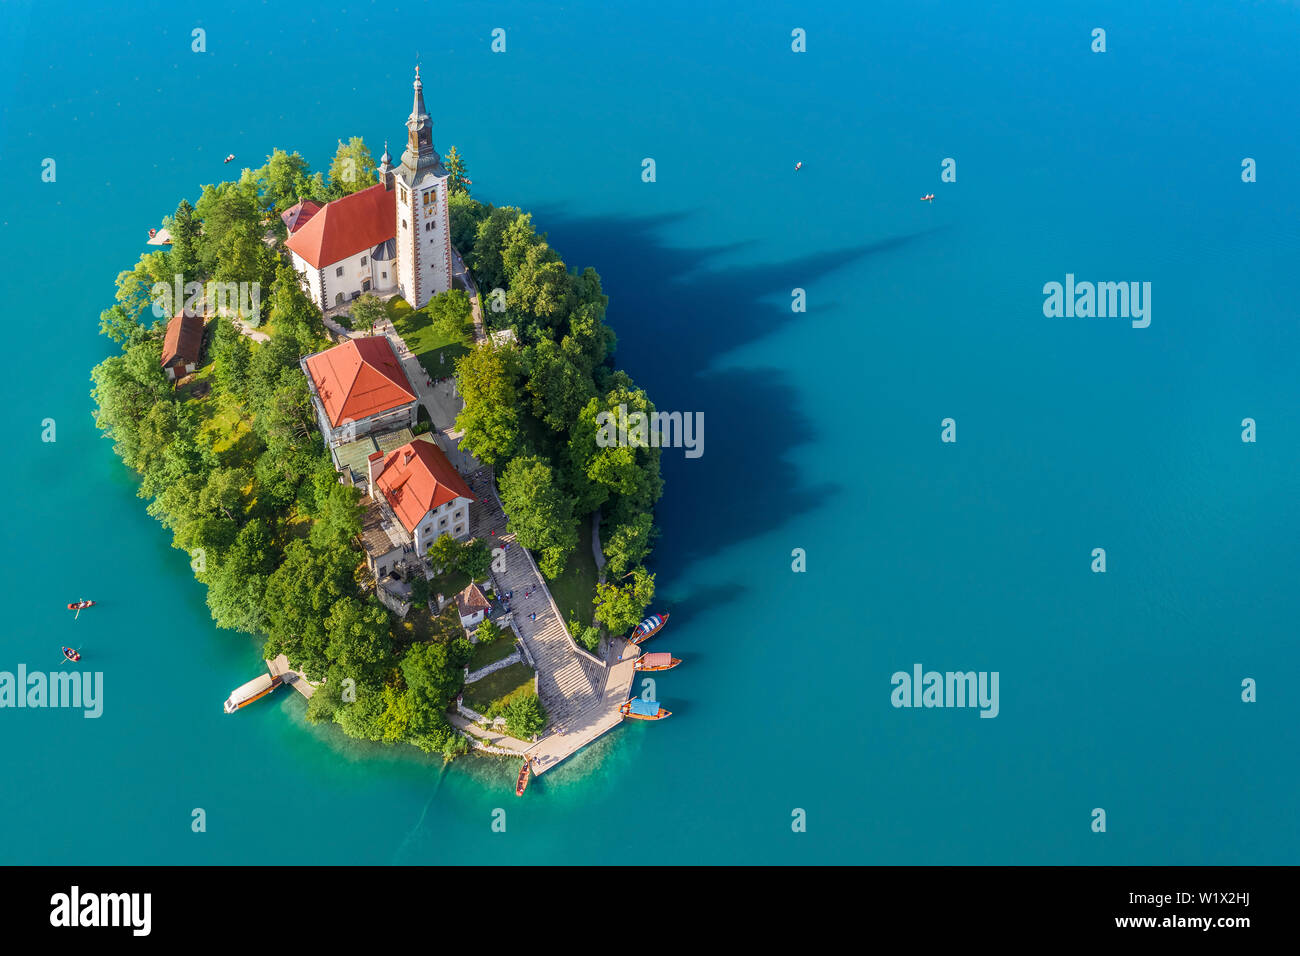 Der See von Bled, Slowenien - Luftbild des schönen Sees Bled (Blejsko Jezero) mit der Wallfahrtskirche Mariä Himmelfahrt der Maria auf einer kleinen Insel mit Stockfoto